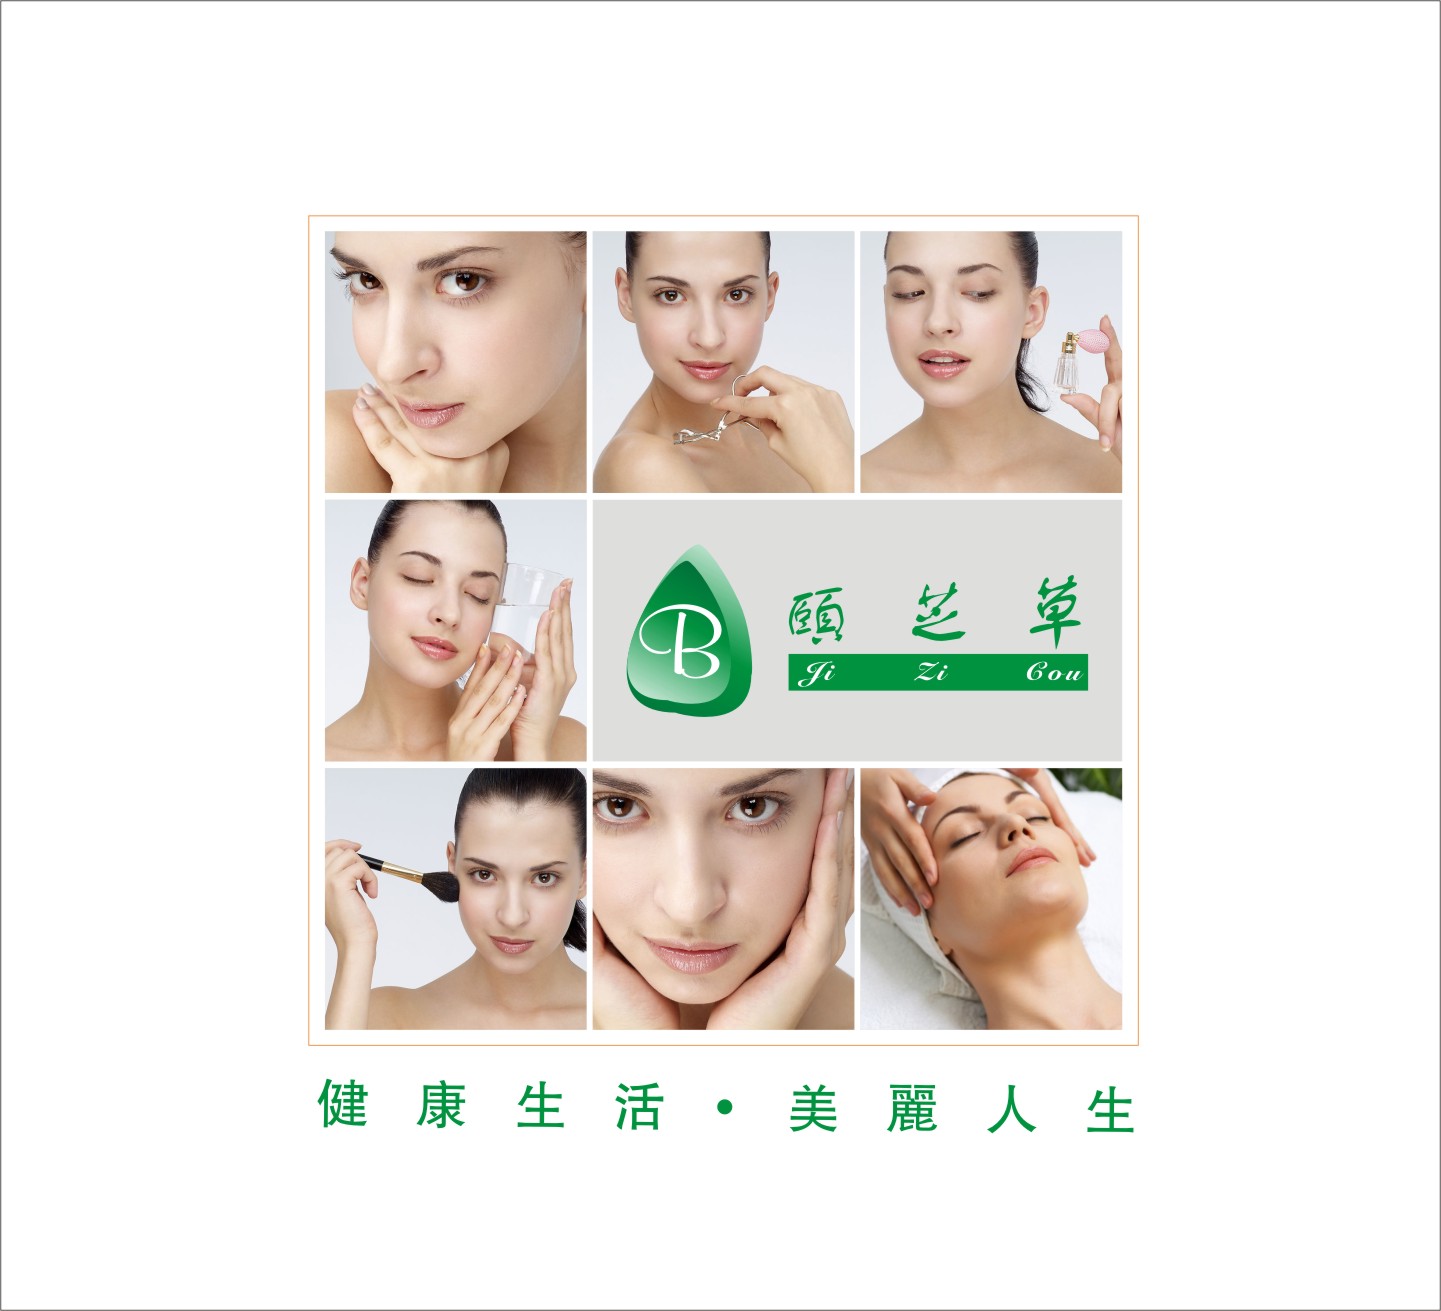 深圳美容院护肤品企业形象VIS设计/产品包装招商宣传画册海报印刷